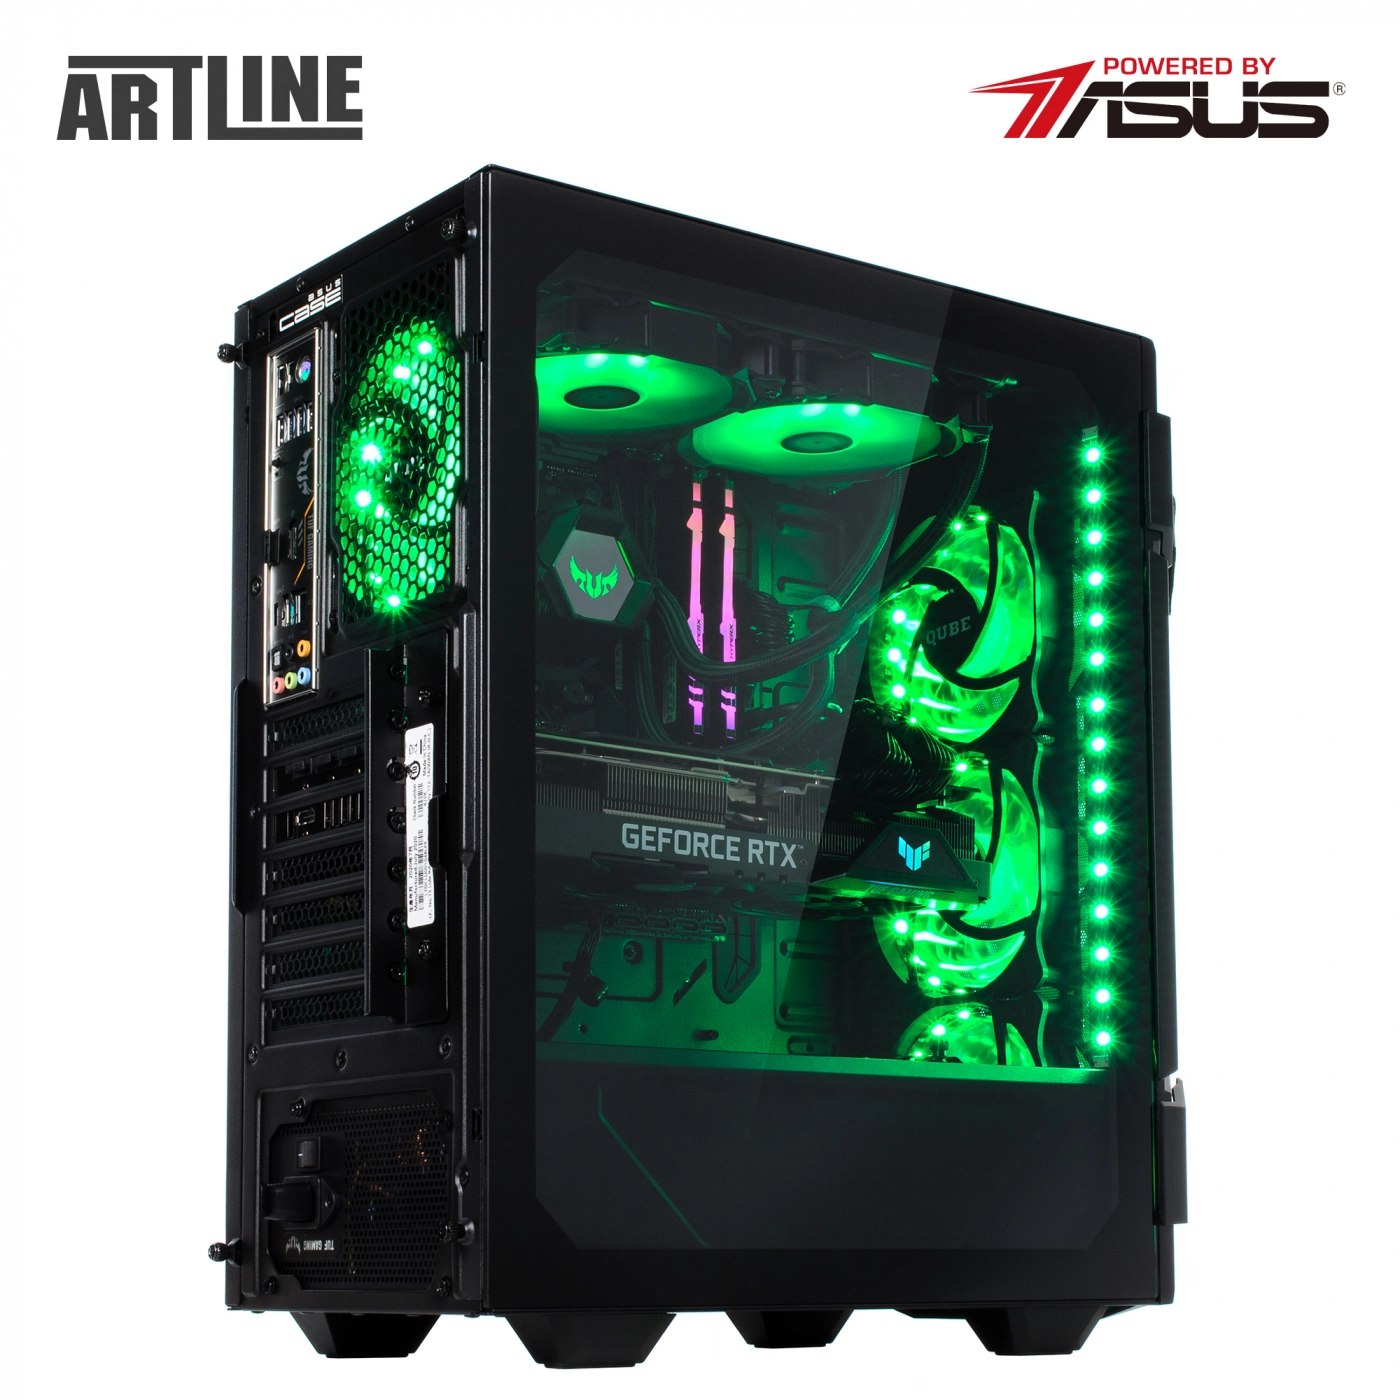 Купить Компьютер ARTLINE Gaming TUFv41 - фото 12